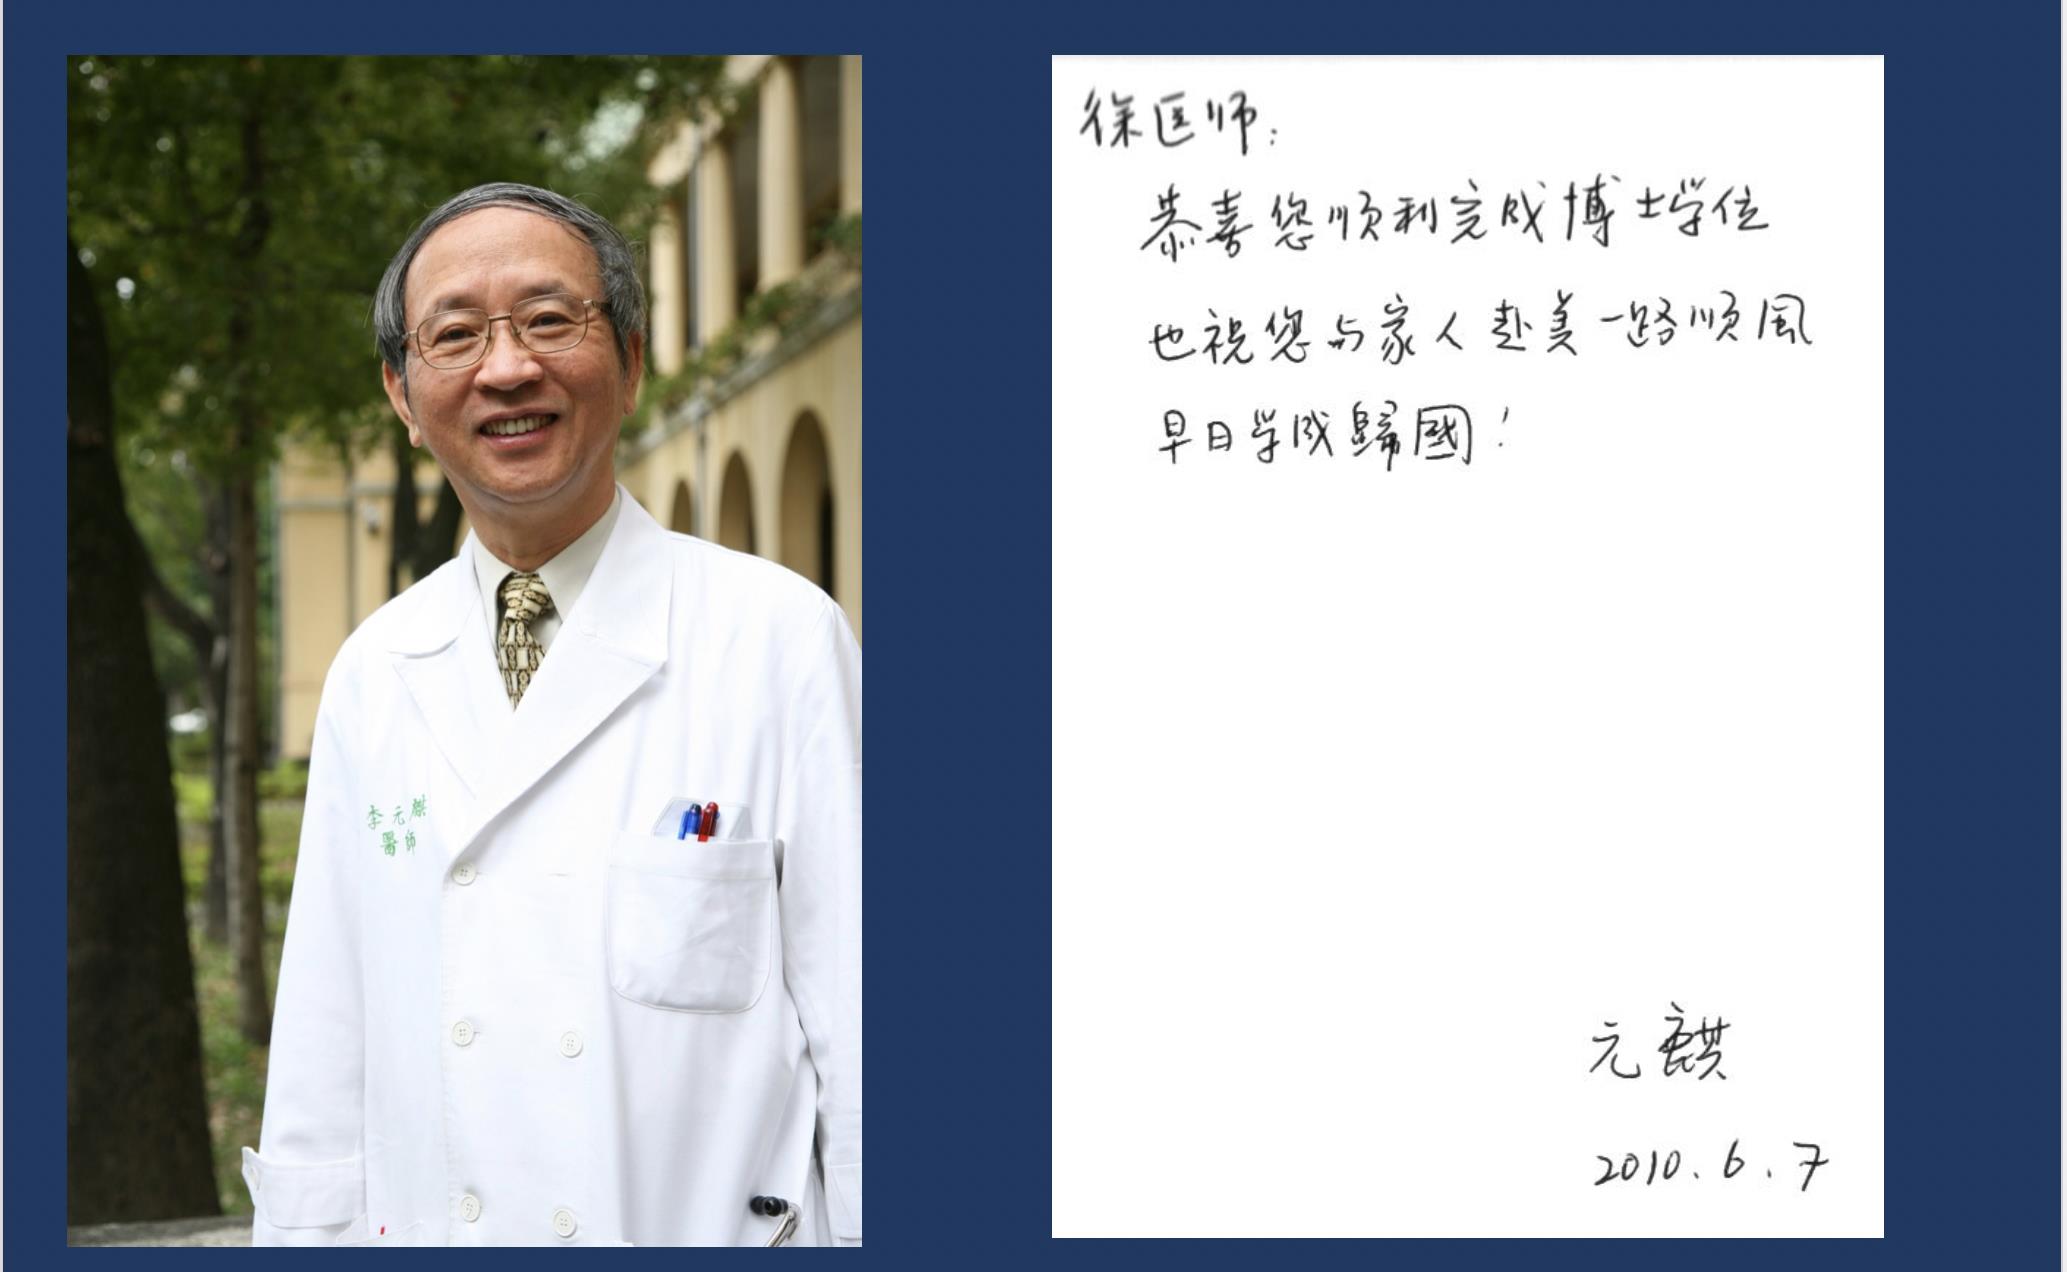 徐绍勋至今留著李元麒教授的卡片，对于李教授的鼓励，他一直放在心上。图／徐绍勋医师提供